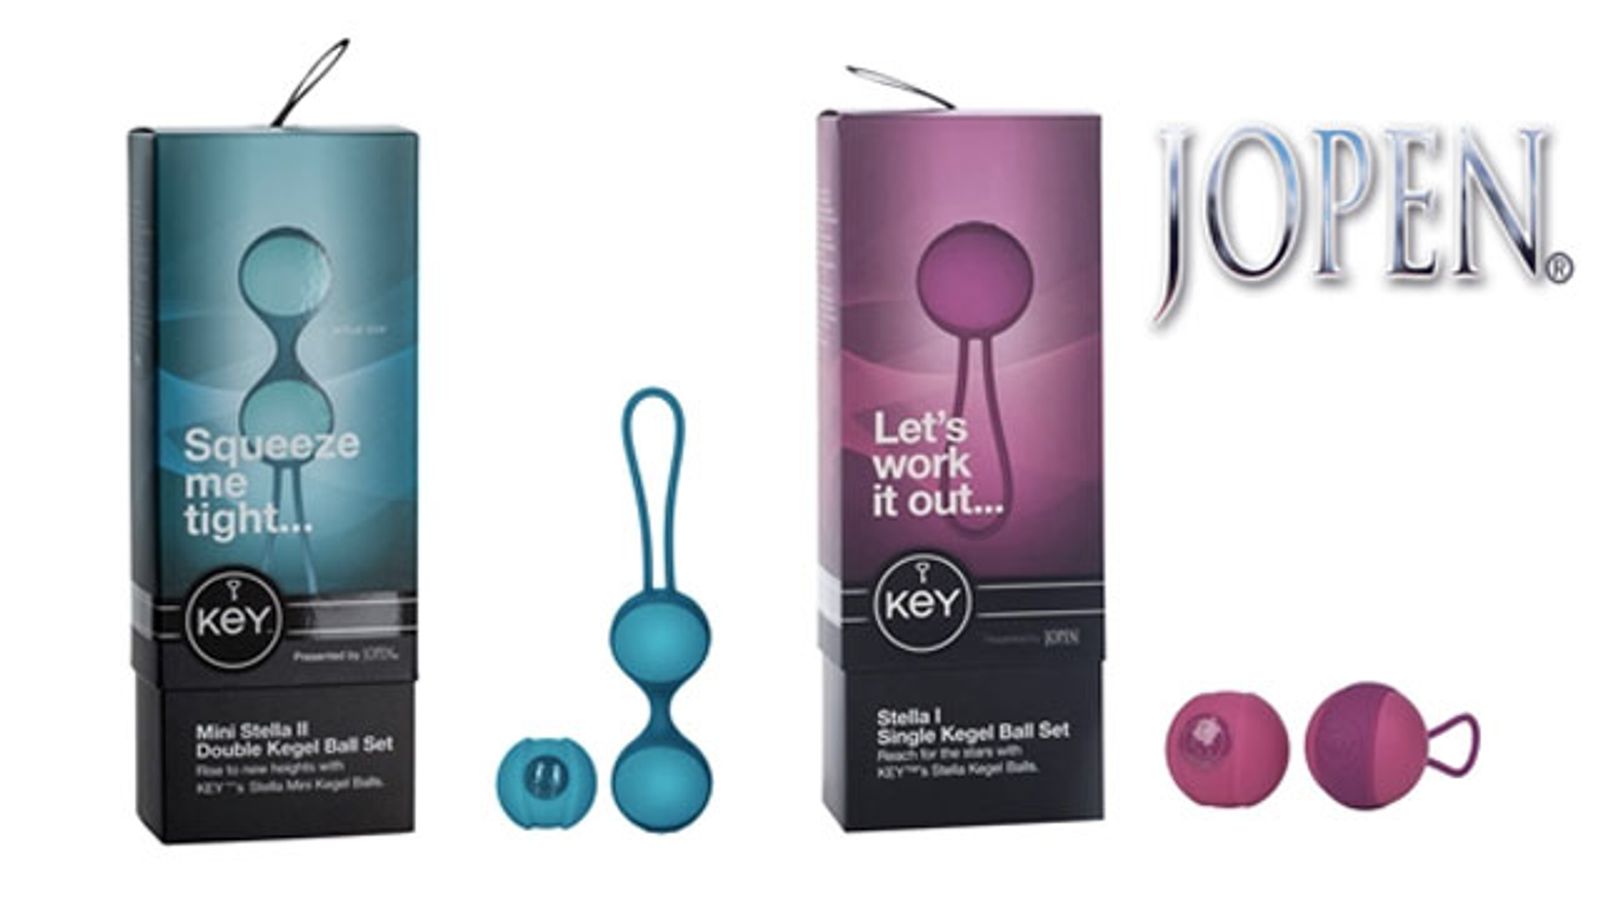 Key By Jopen Releases Mini Stella Kegel Balls in Two Styles